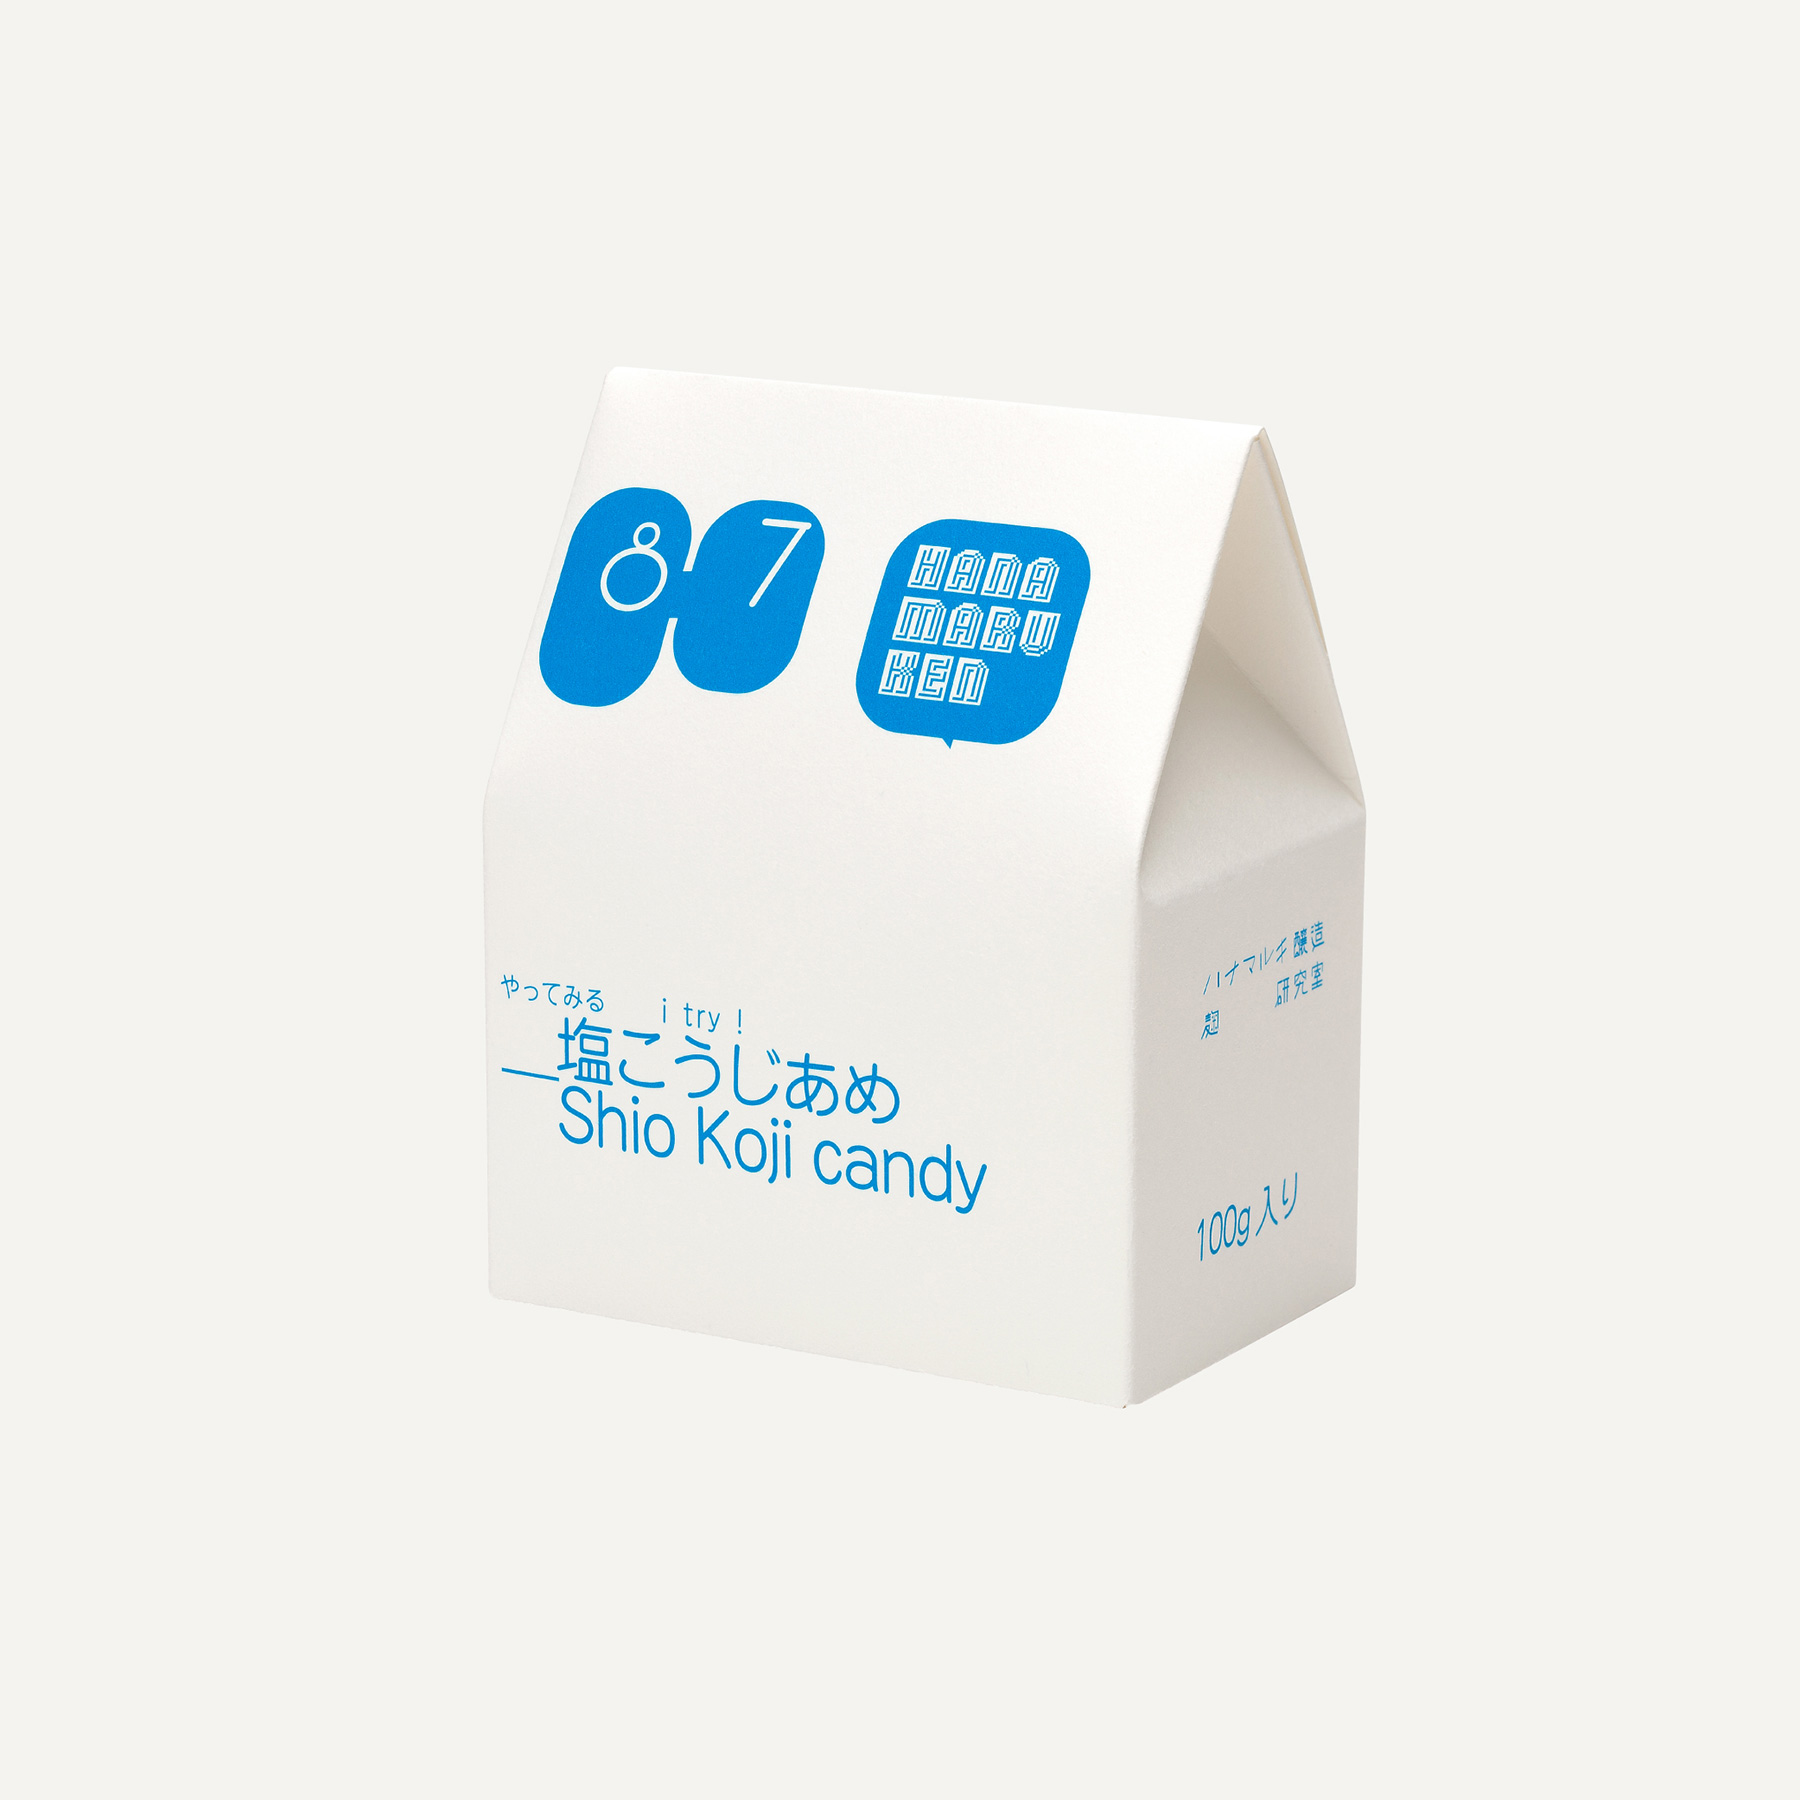 Shio Koji Candy